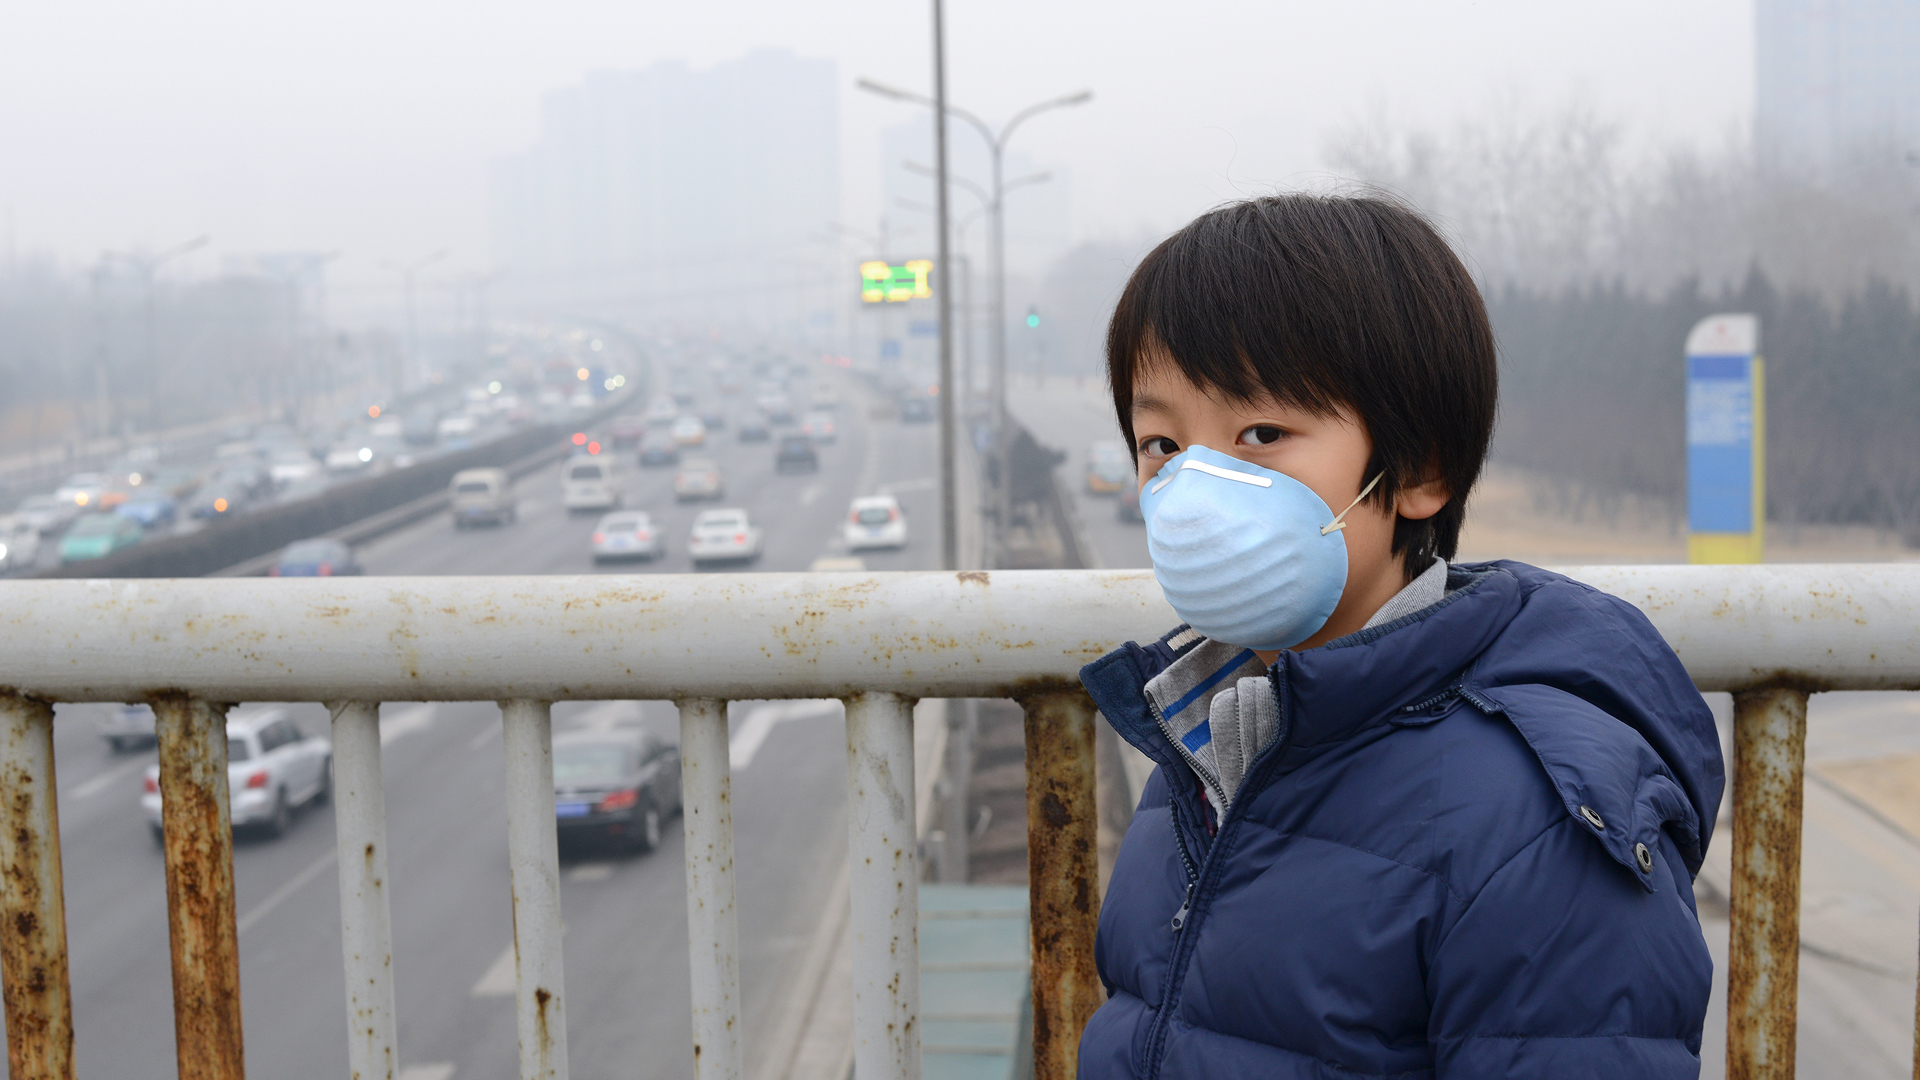 “Casi toda la población mundial (99%) respira aire que excede los límites de calidad del aire de la OMS y amenaza su salud”, advirtió el organismo internacional
(iStock)